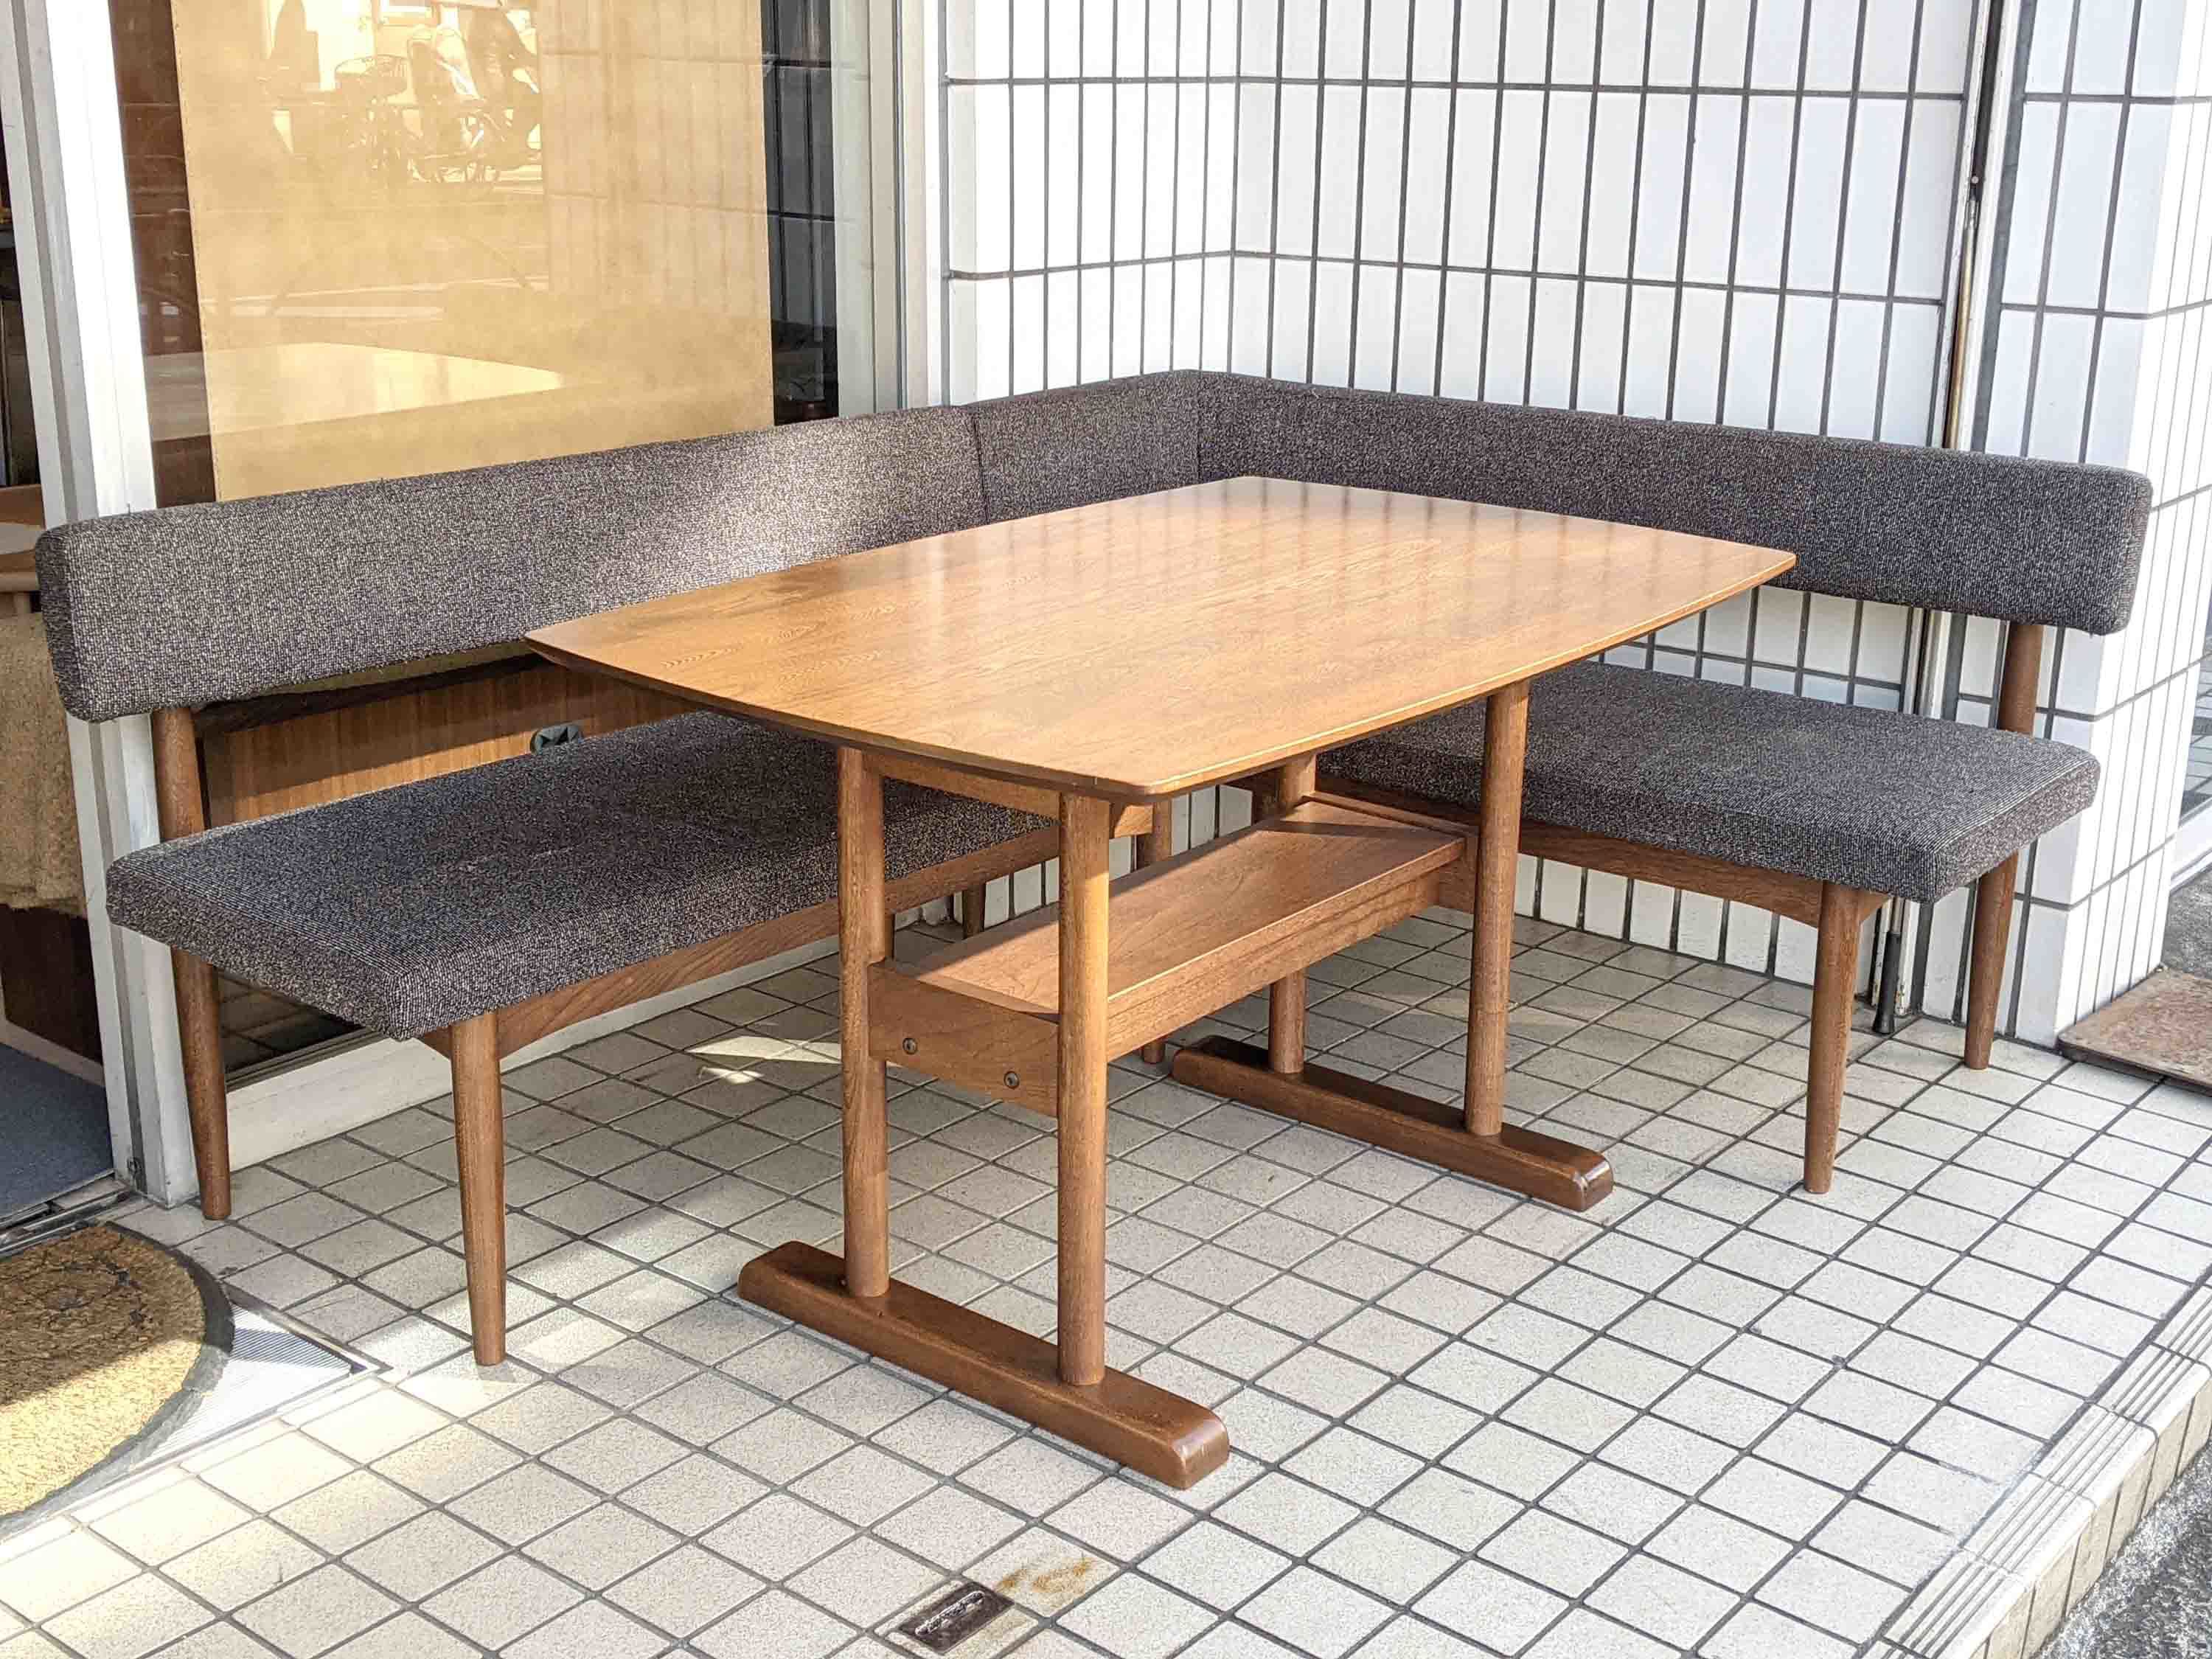 unico/ウニコ】SUK/スーク ベンチダイニングテーブルセット が入荷しました【目黒区 | ReSale LOOPのブログ